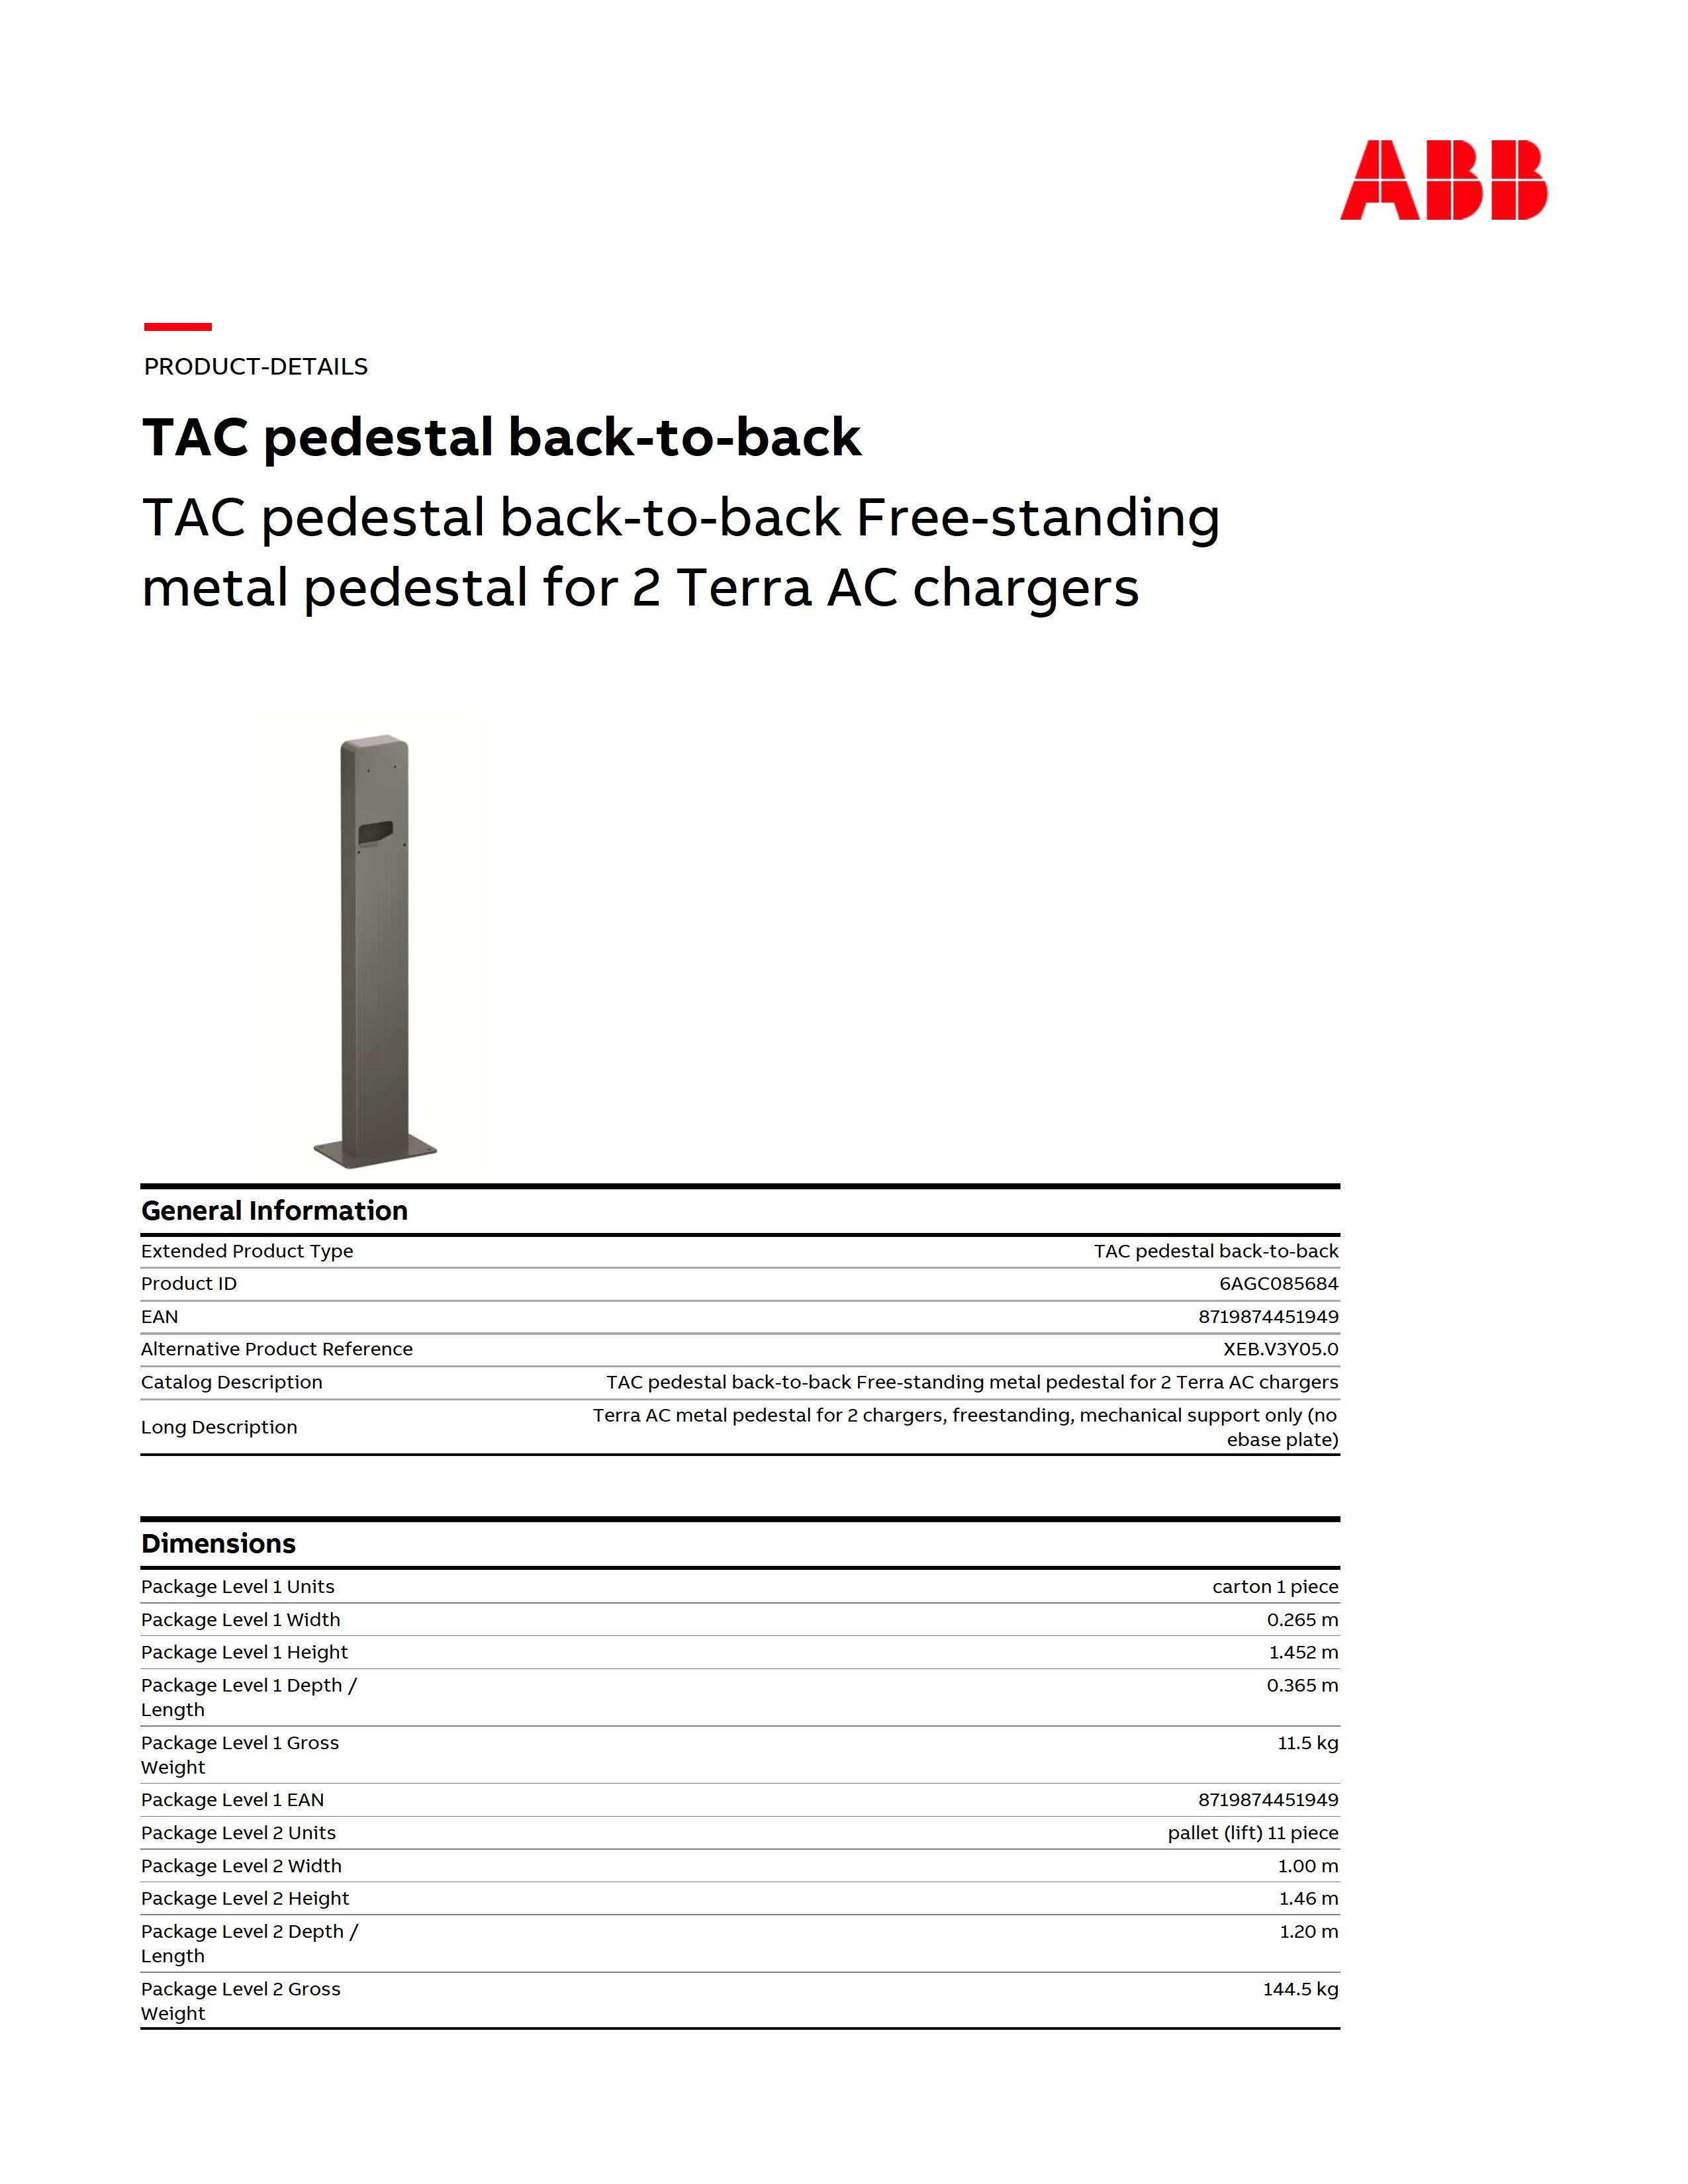 ABB TAC pedestal back-to-back